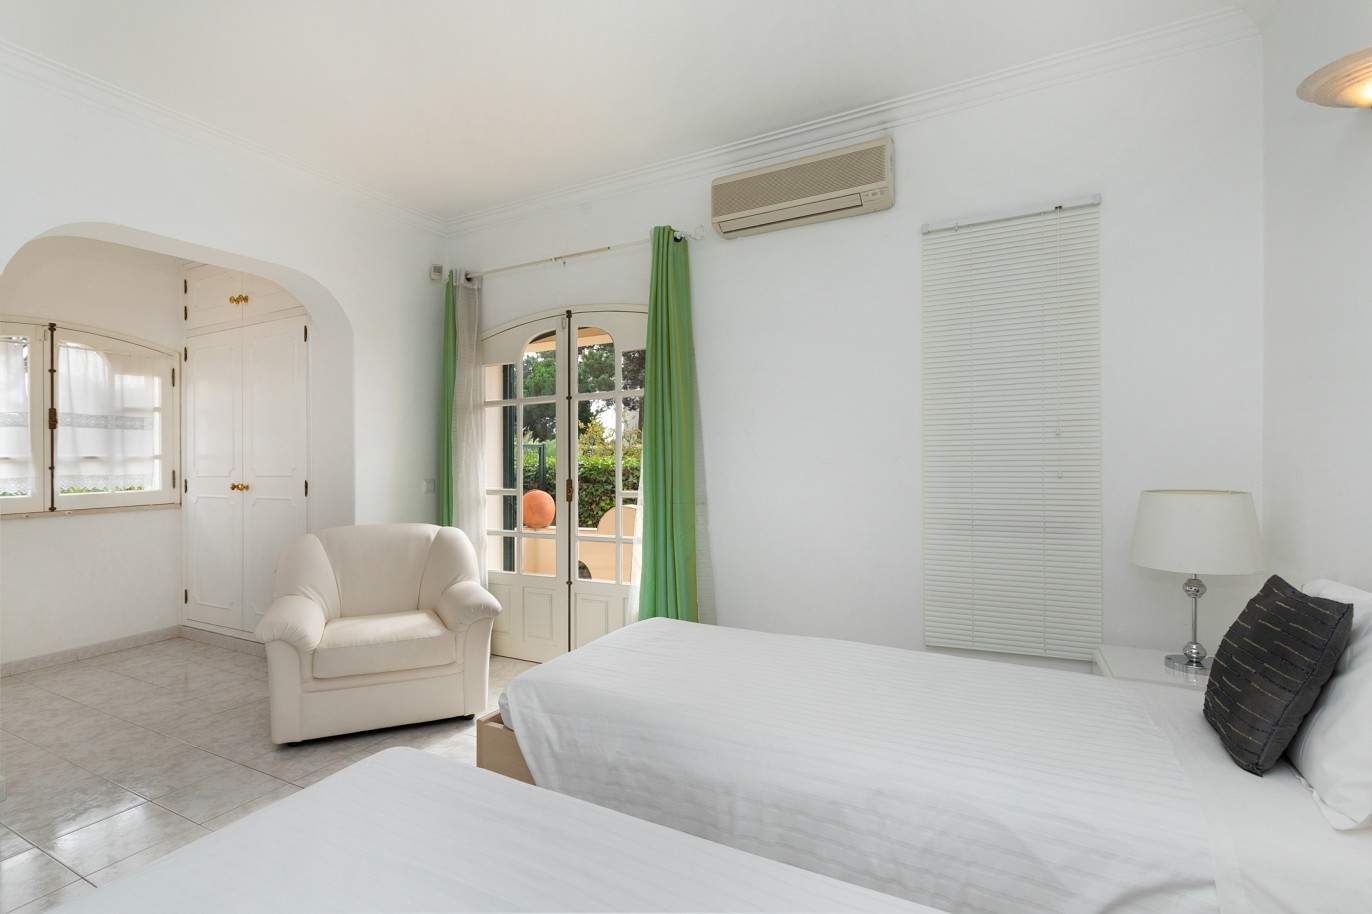 5 Bedroom Villa with pool for sale in Vilamoura, Algarve_212554